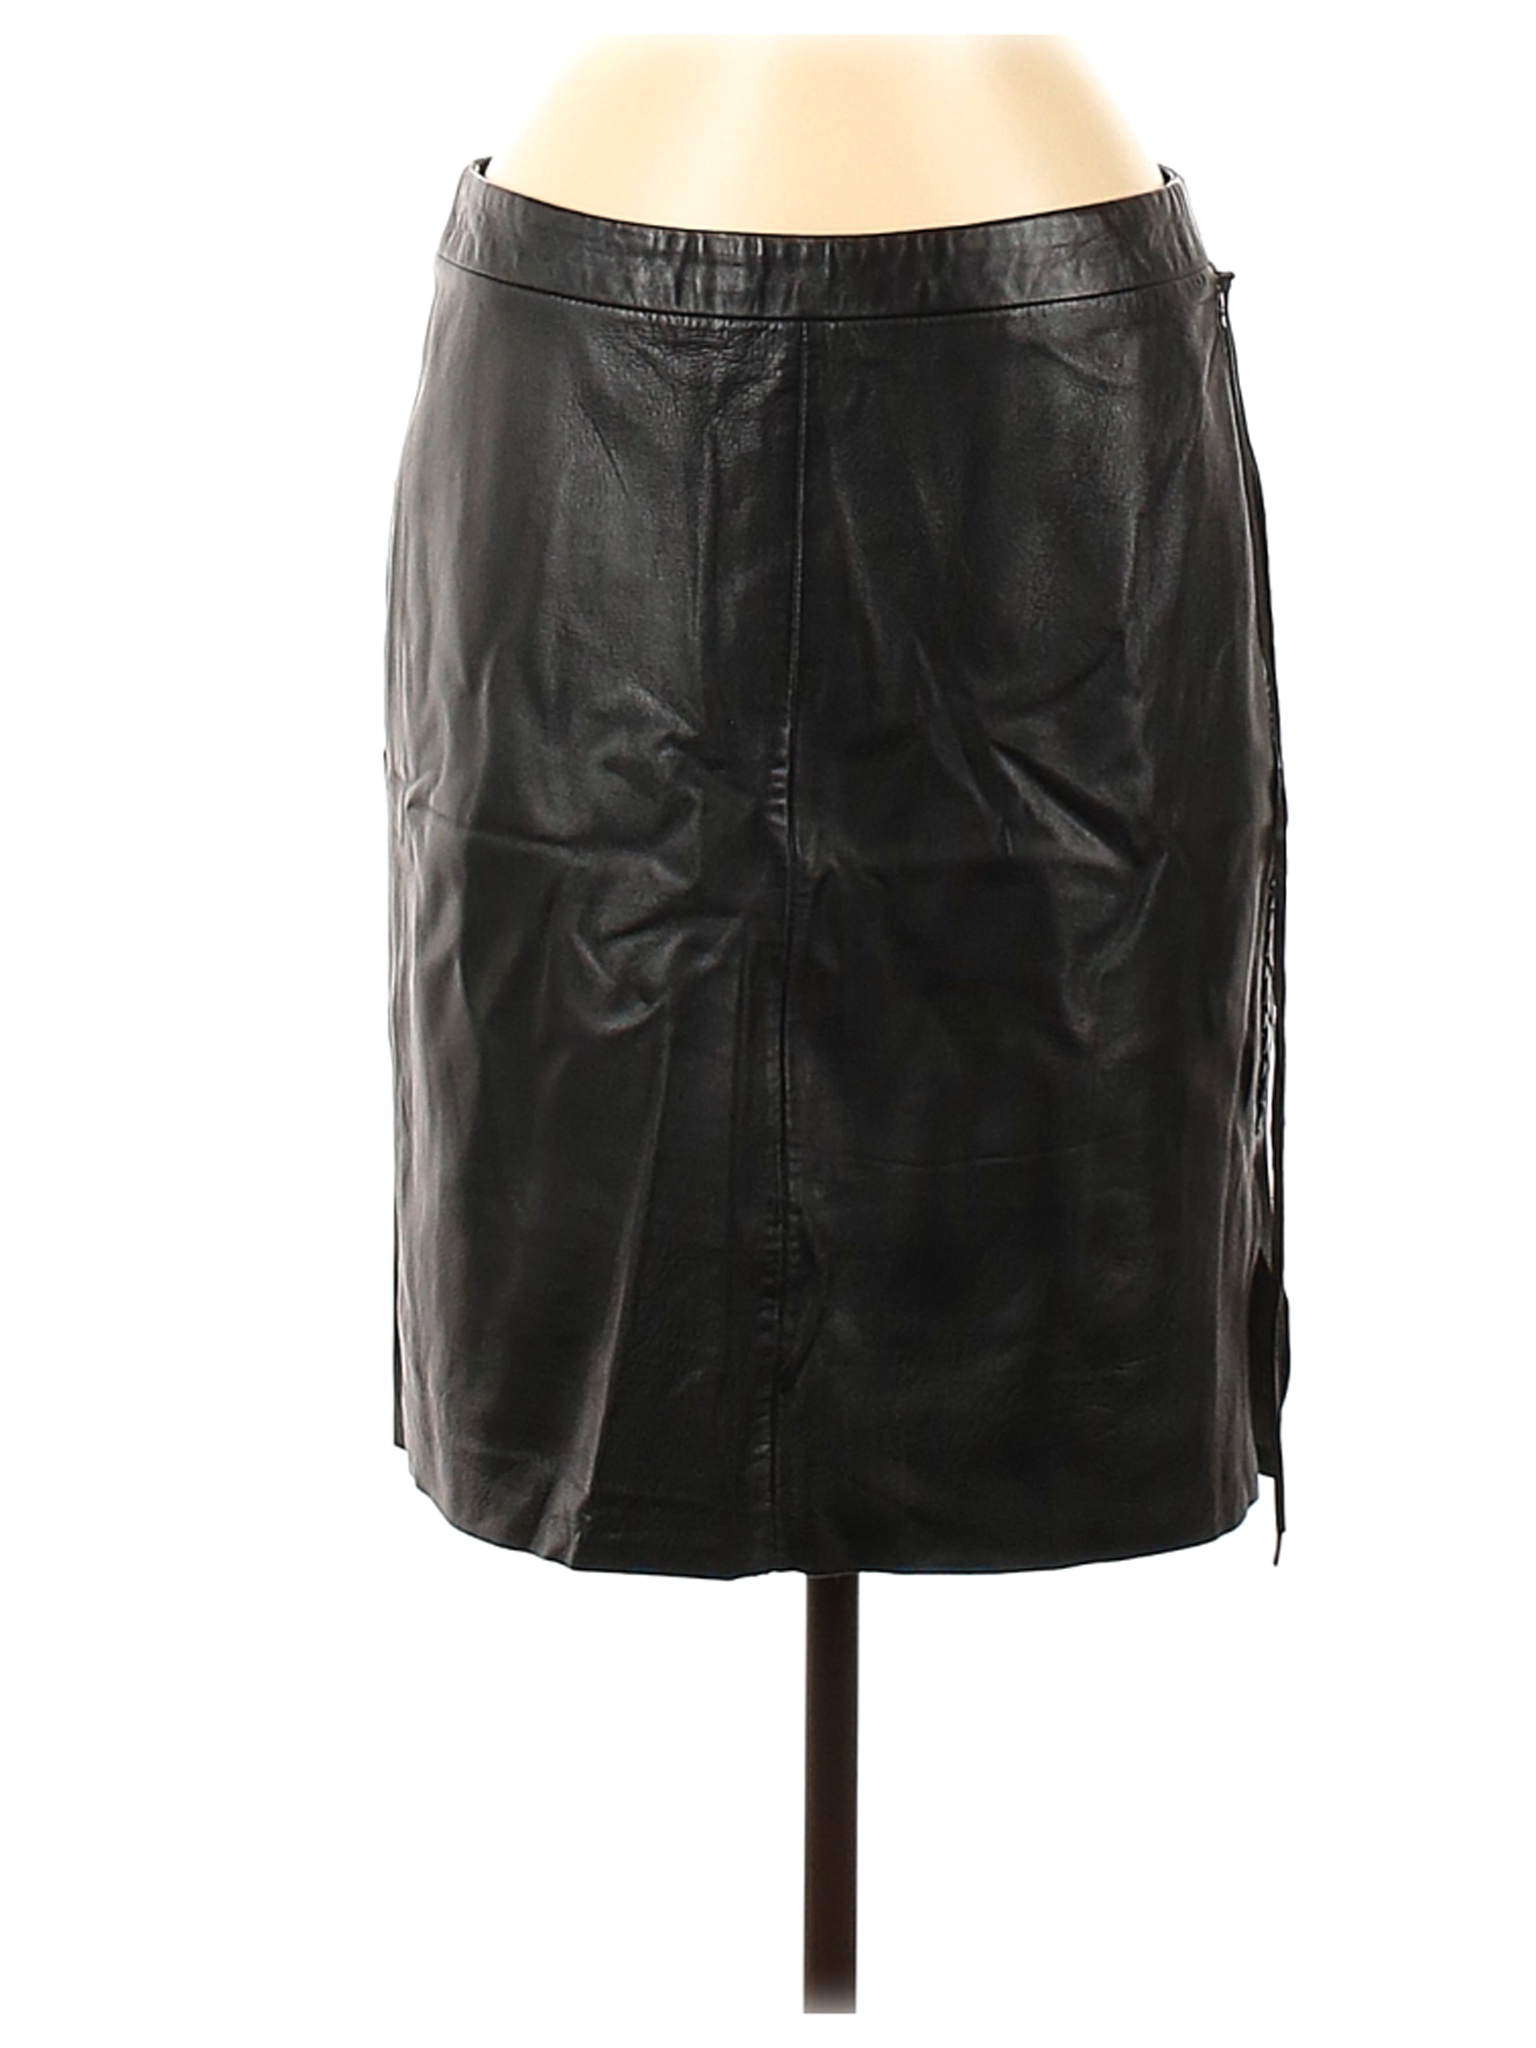 Banana Republic Women Black Leather Skirt 6 | eBay